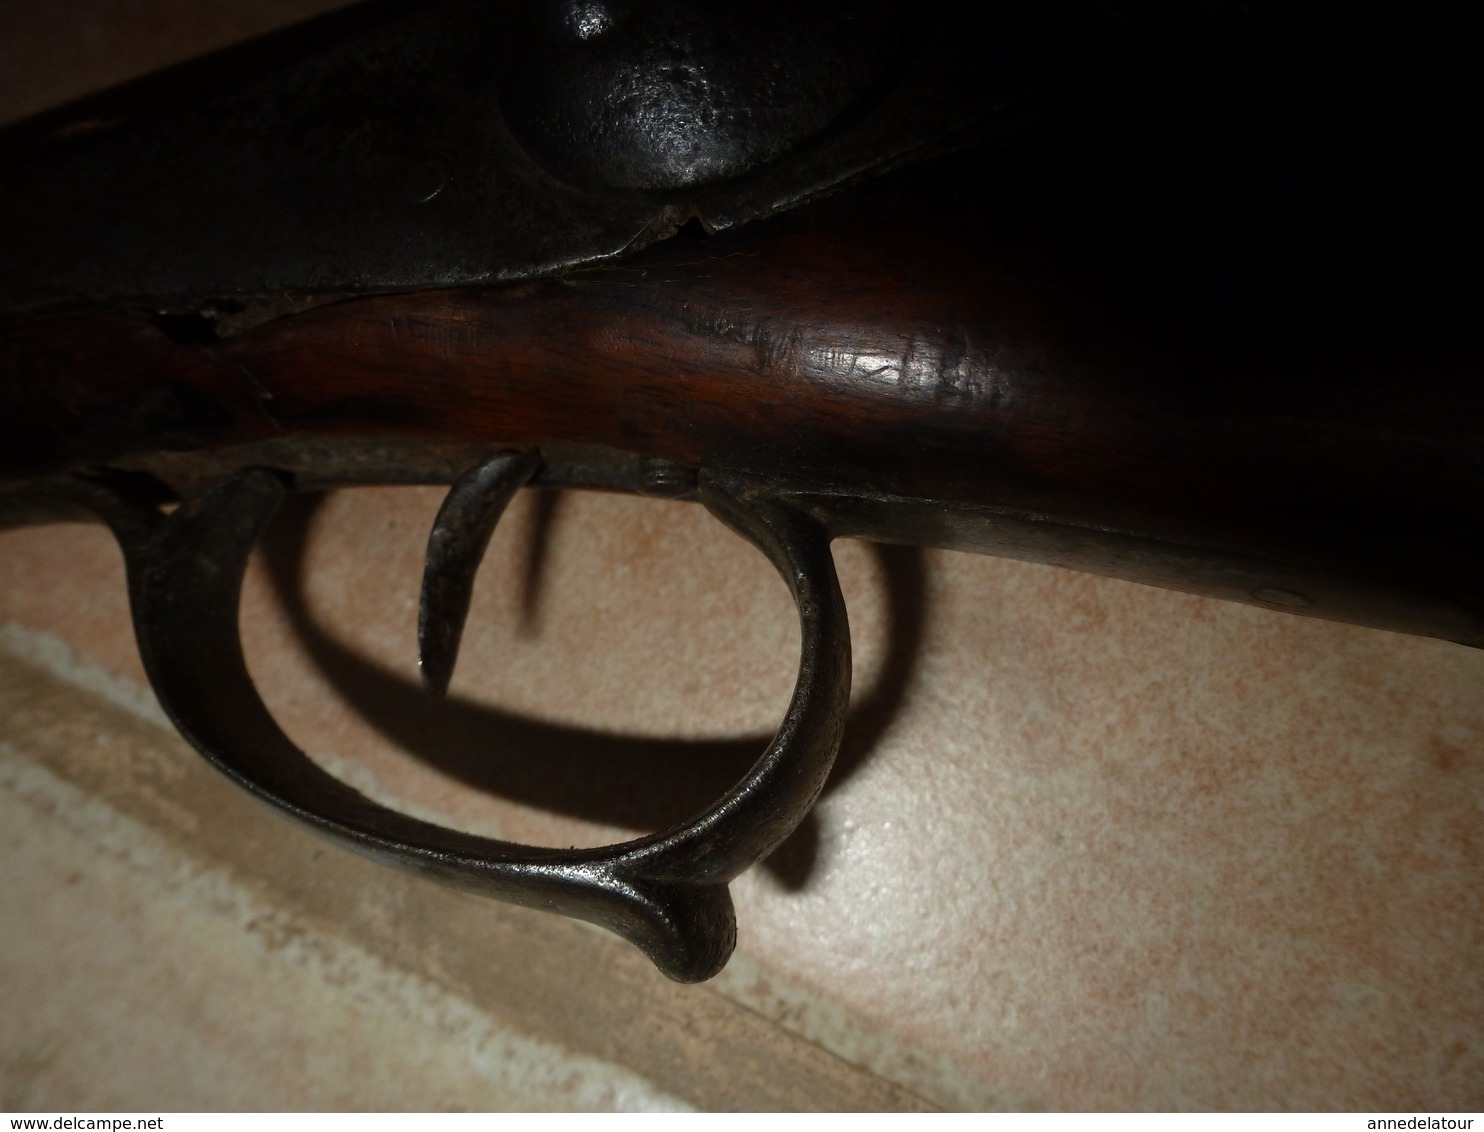 1850 ?  Fusil de chasse ancien  a chargement par bouche (pour décoration , instruction ou collection)